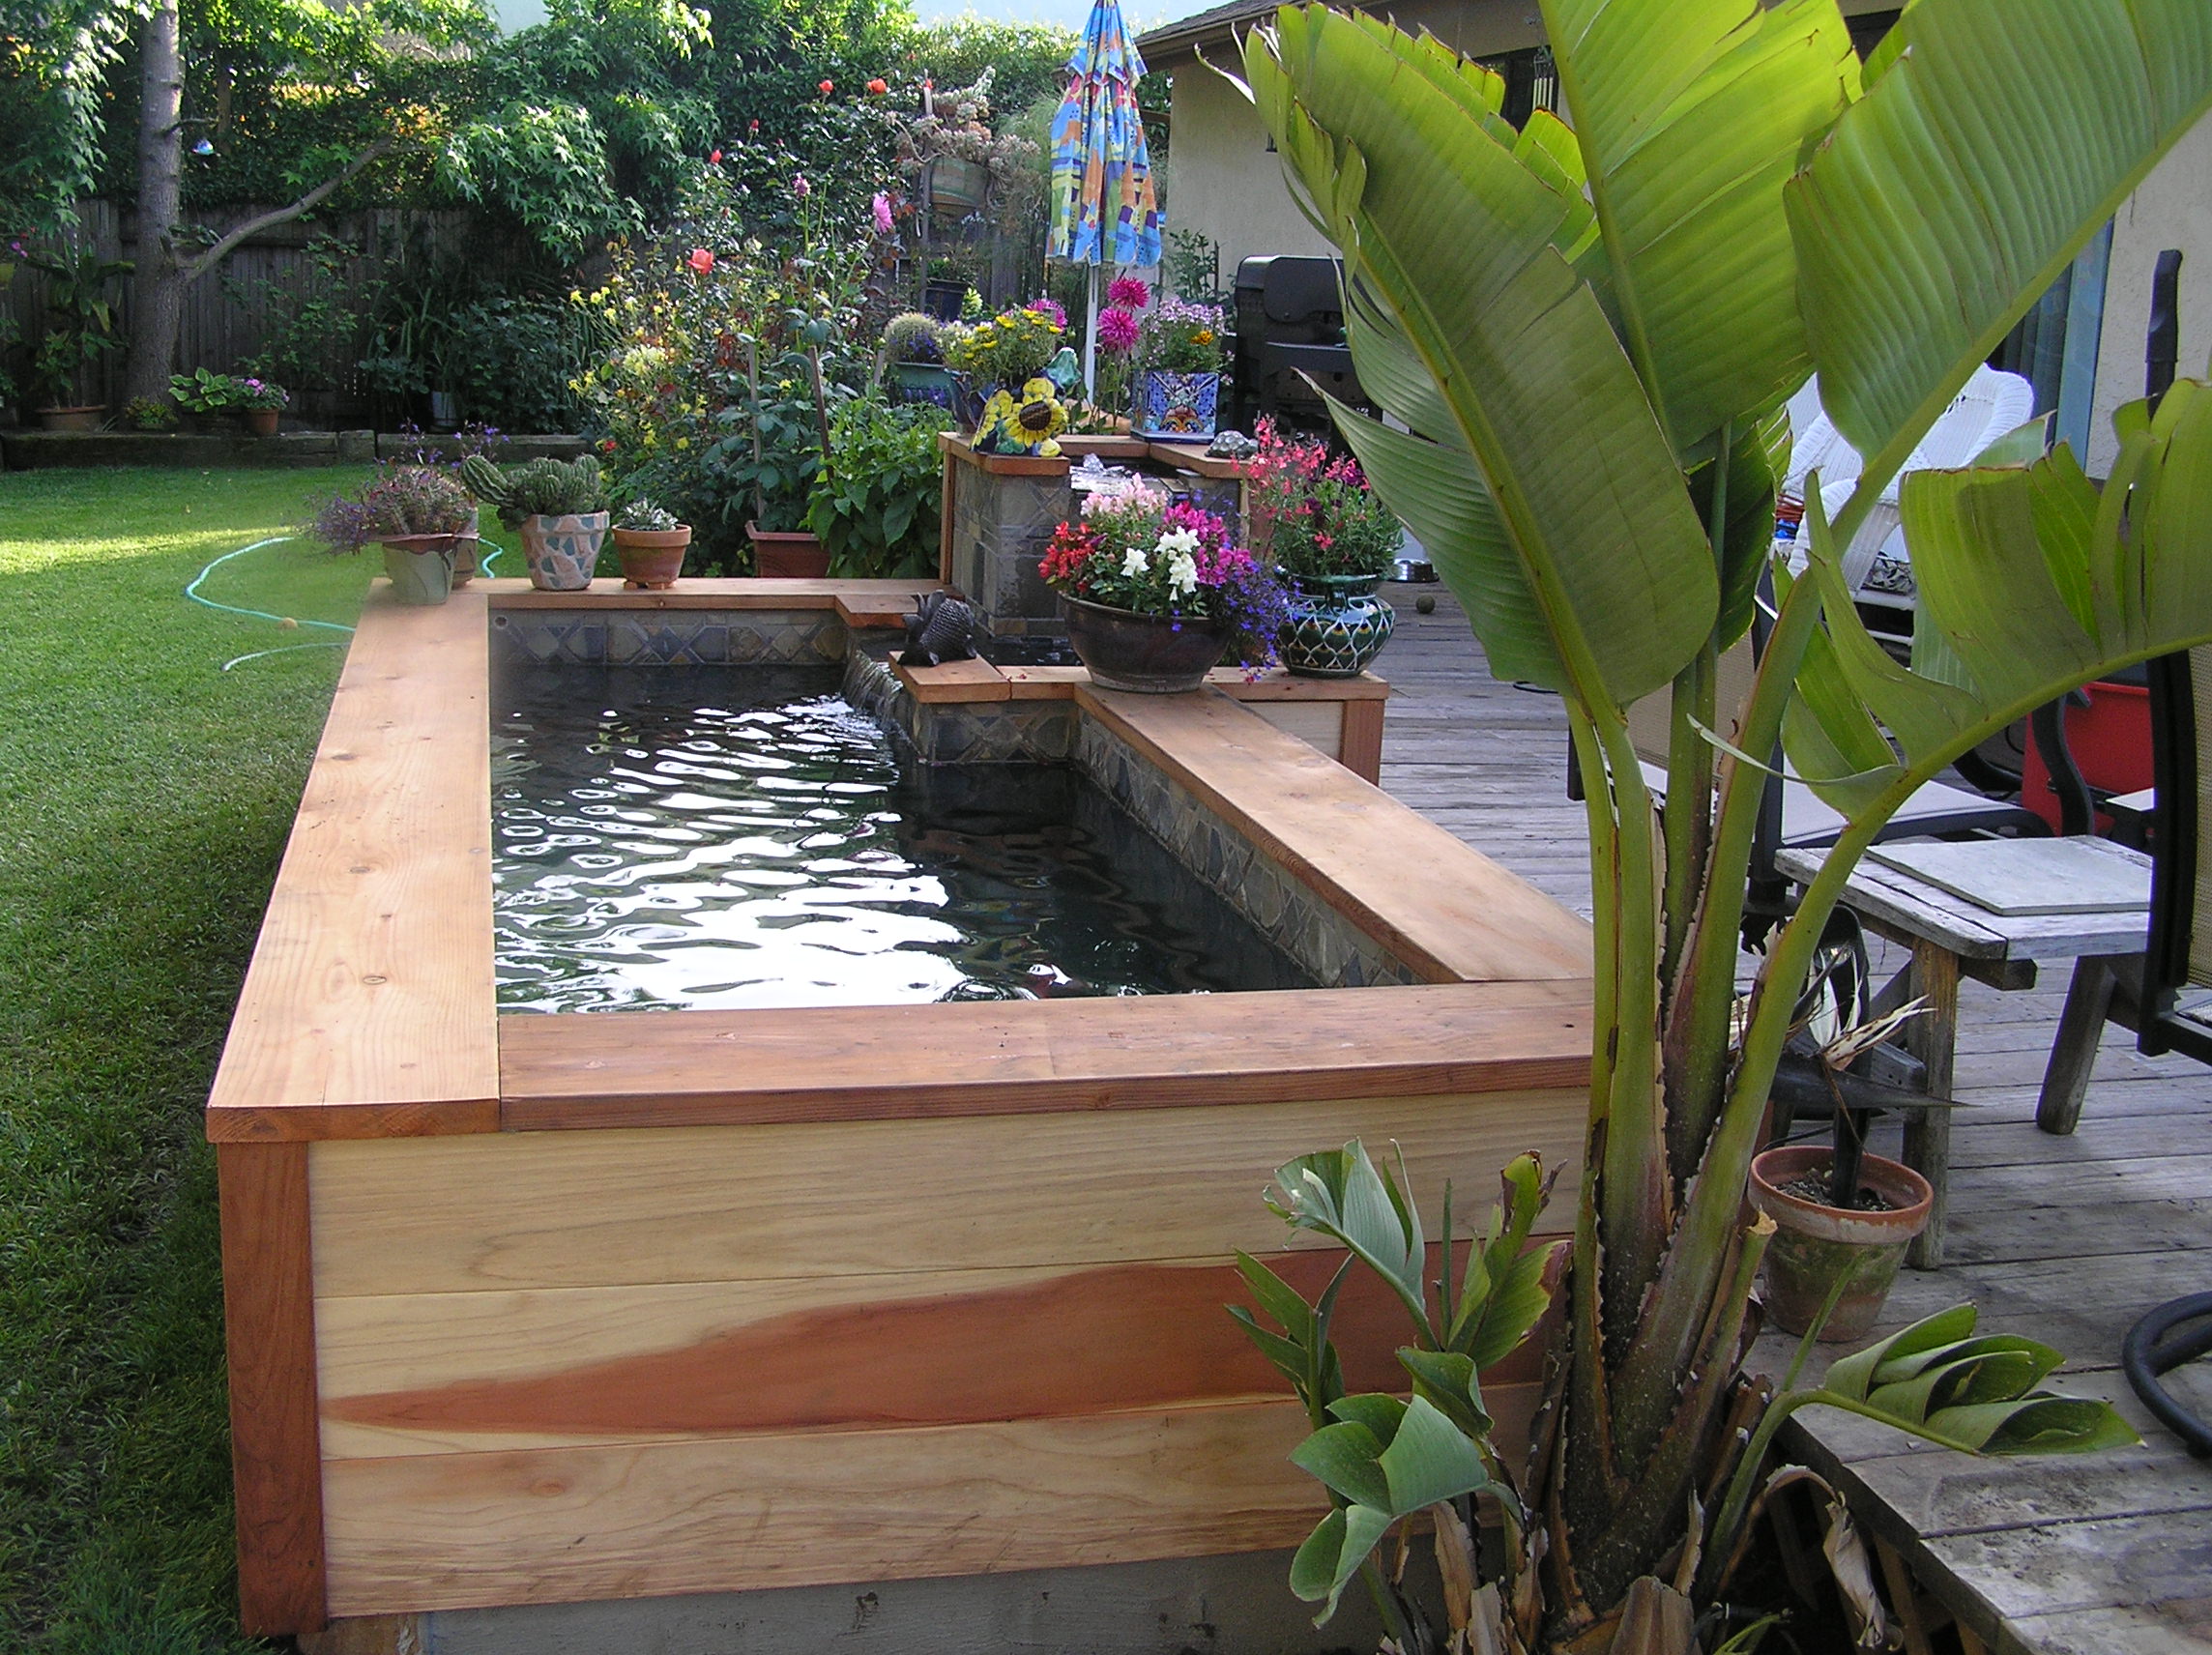 Créer un bassin pour les poissons dans son jardin